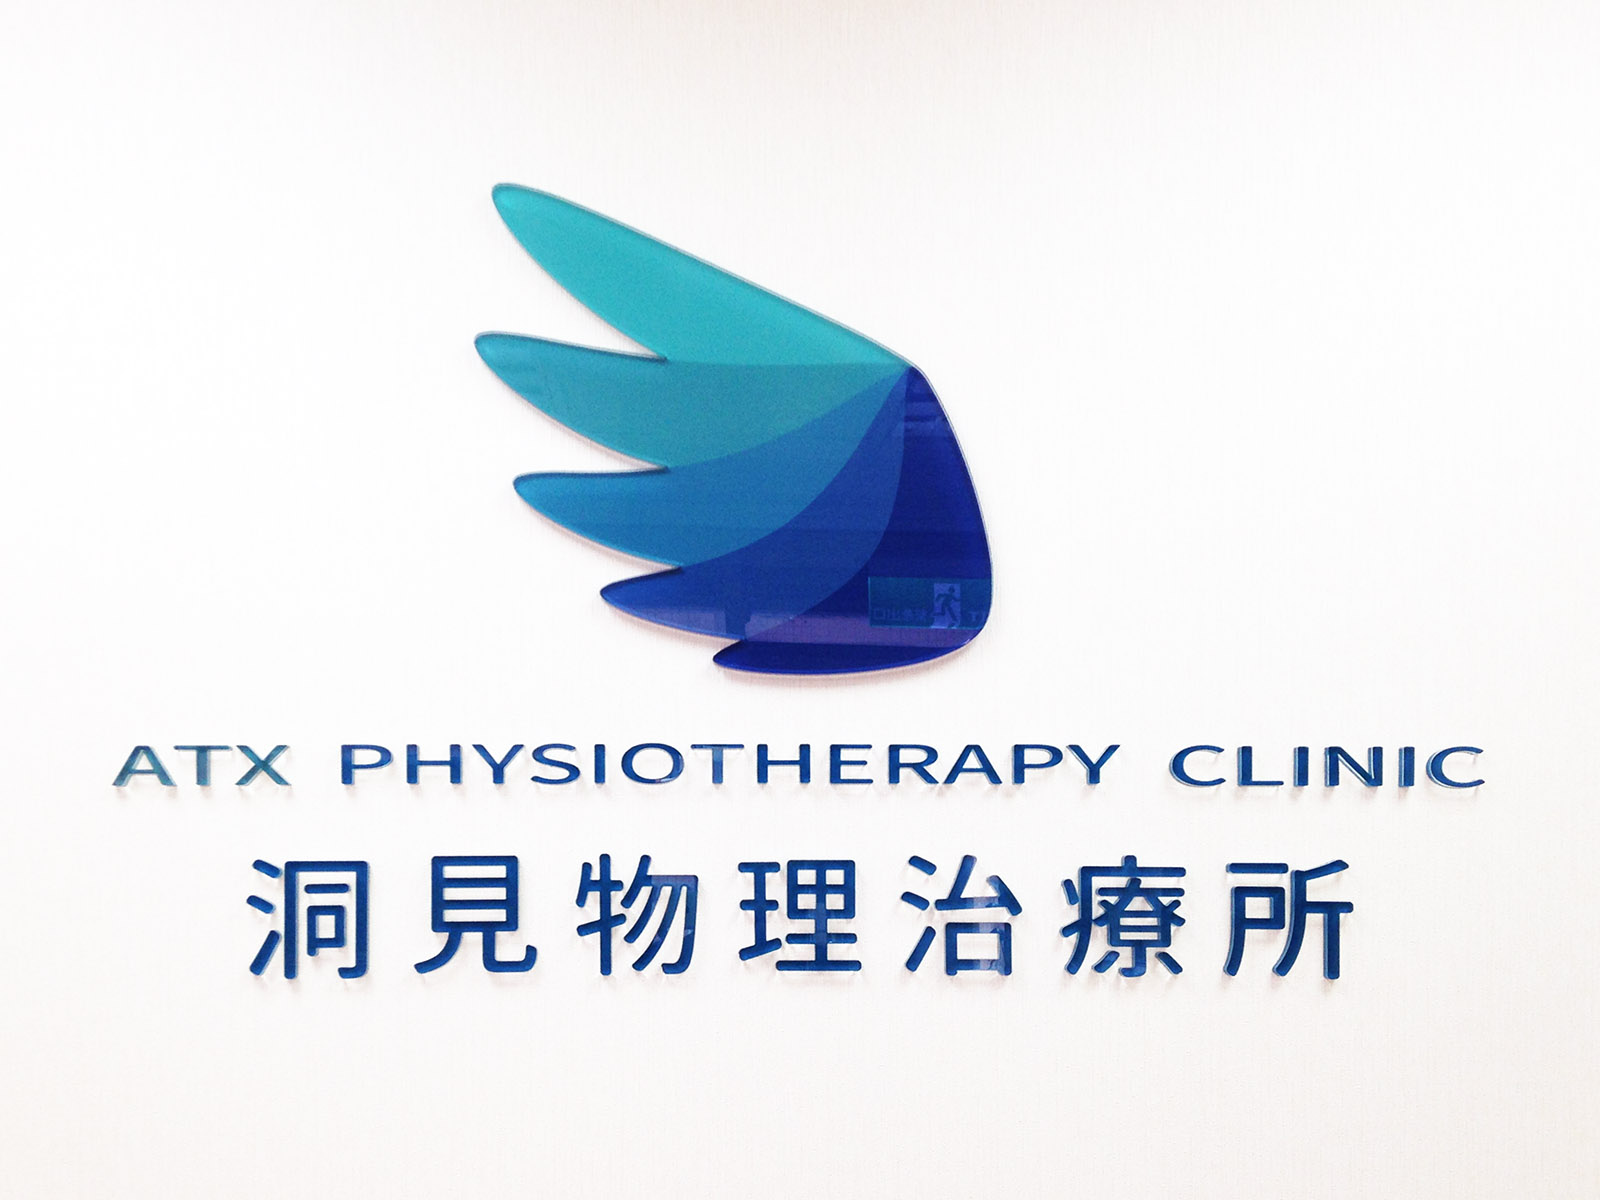 洞見物理治療所-atx-physiotherapy-clinic-桃園市-桃園區-姚斯元-物理治療師